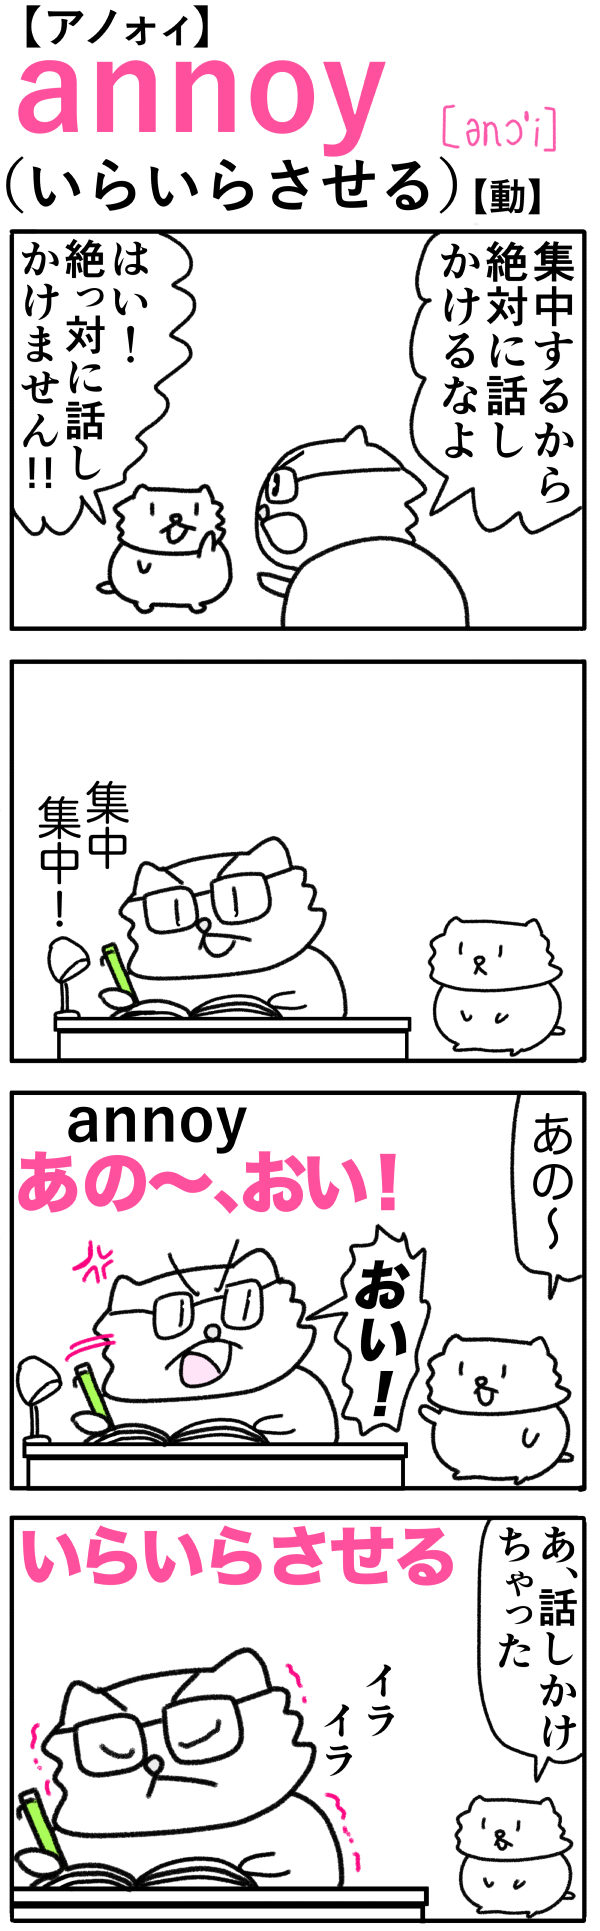 annoy（いらいらさせる）の語呂合わせ英単語